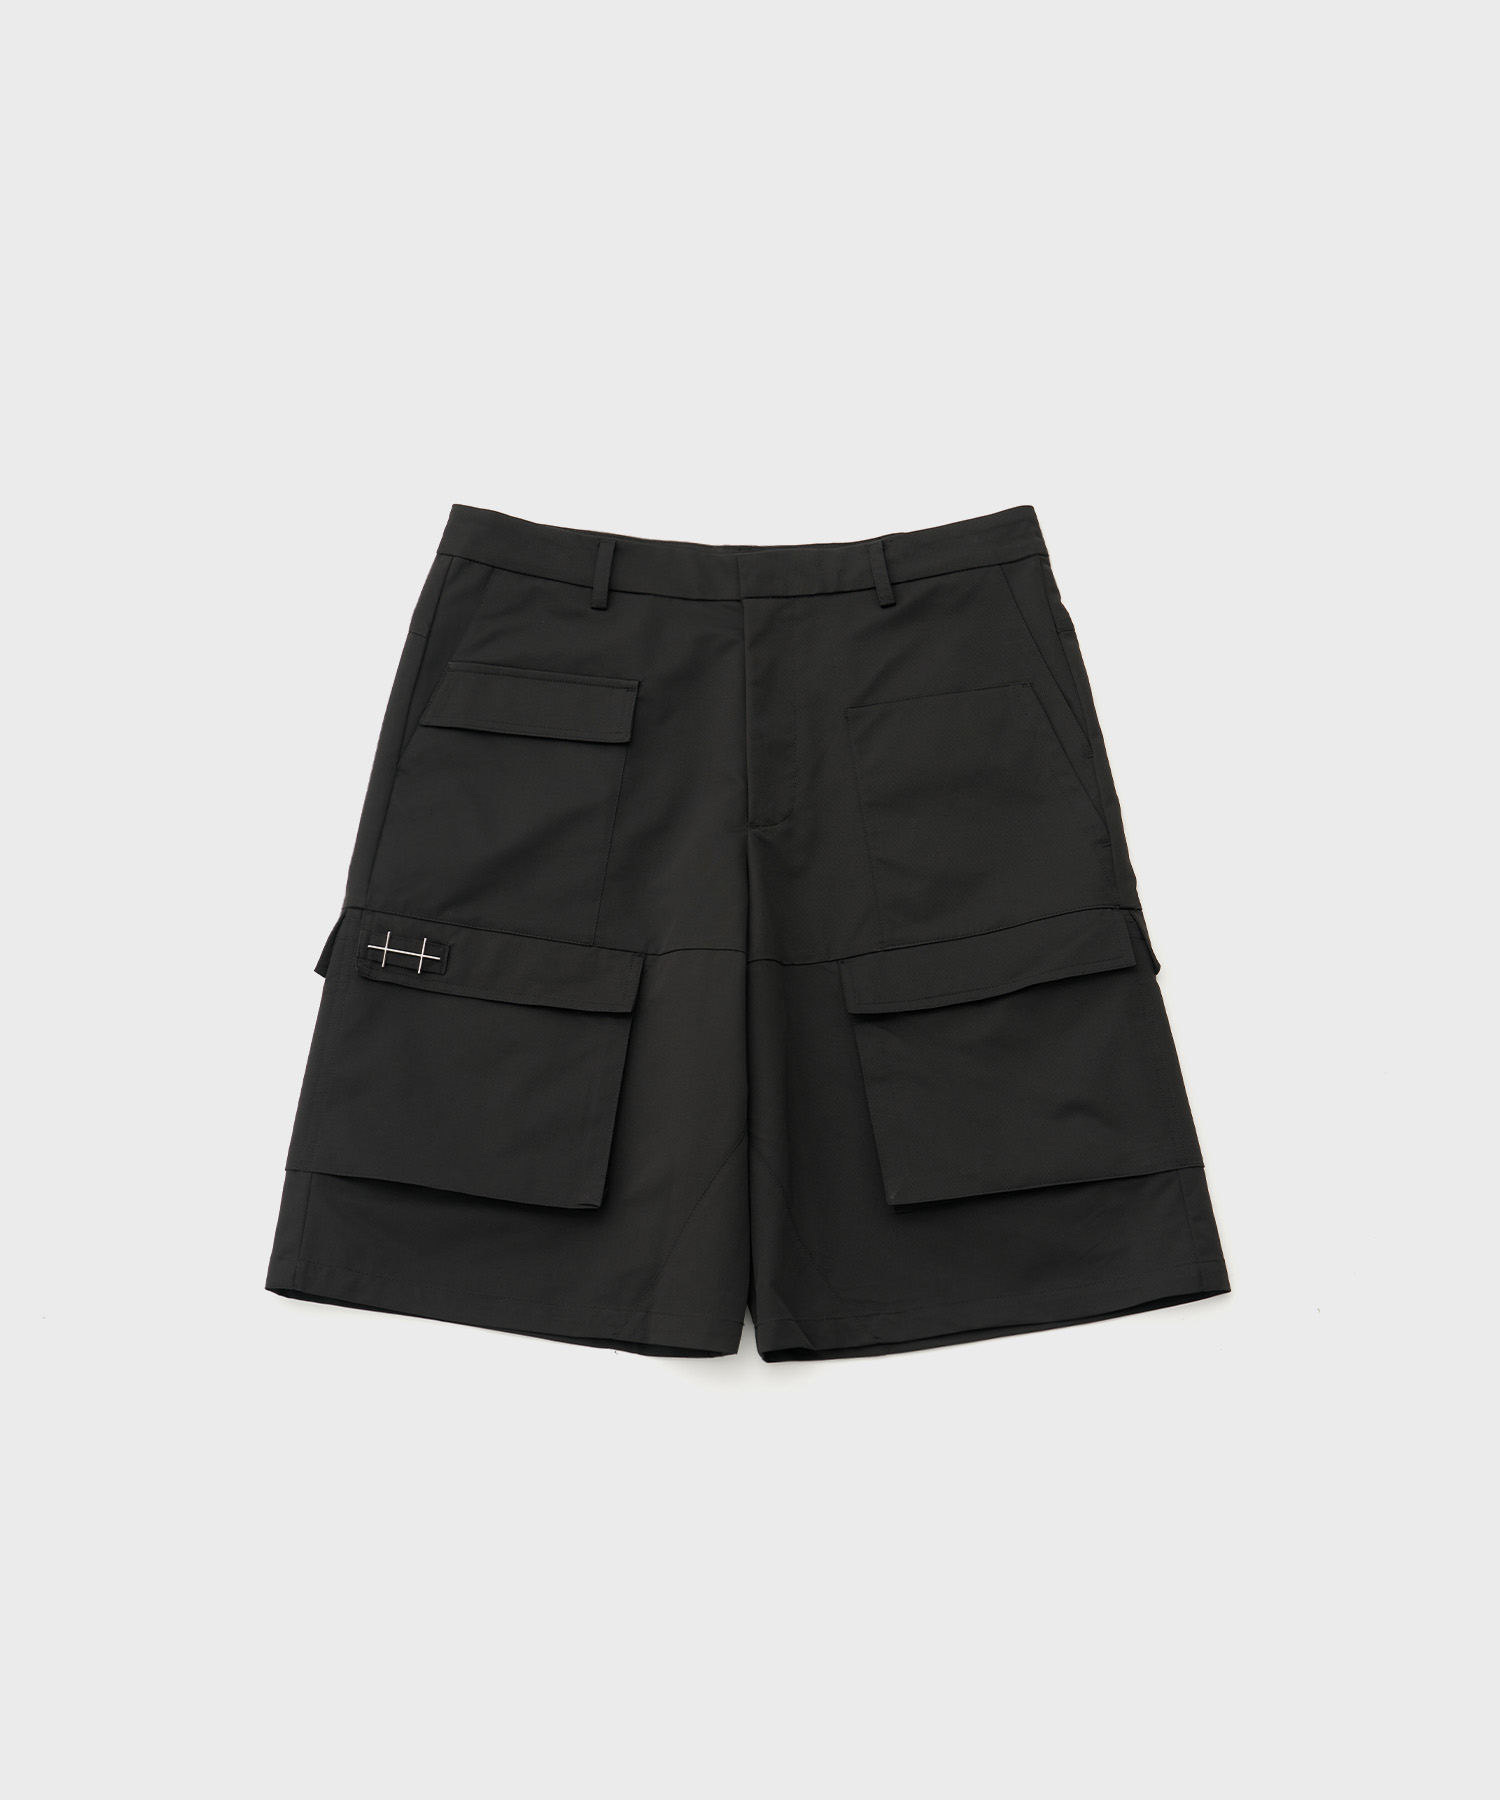 Cellulae Cargo Shorts (Black)